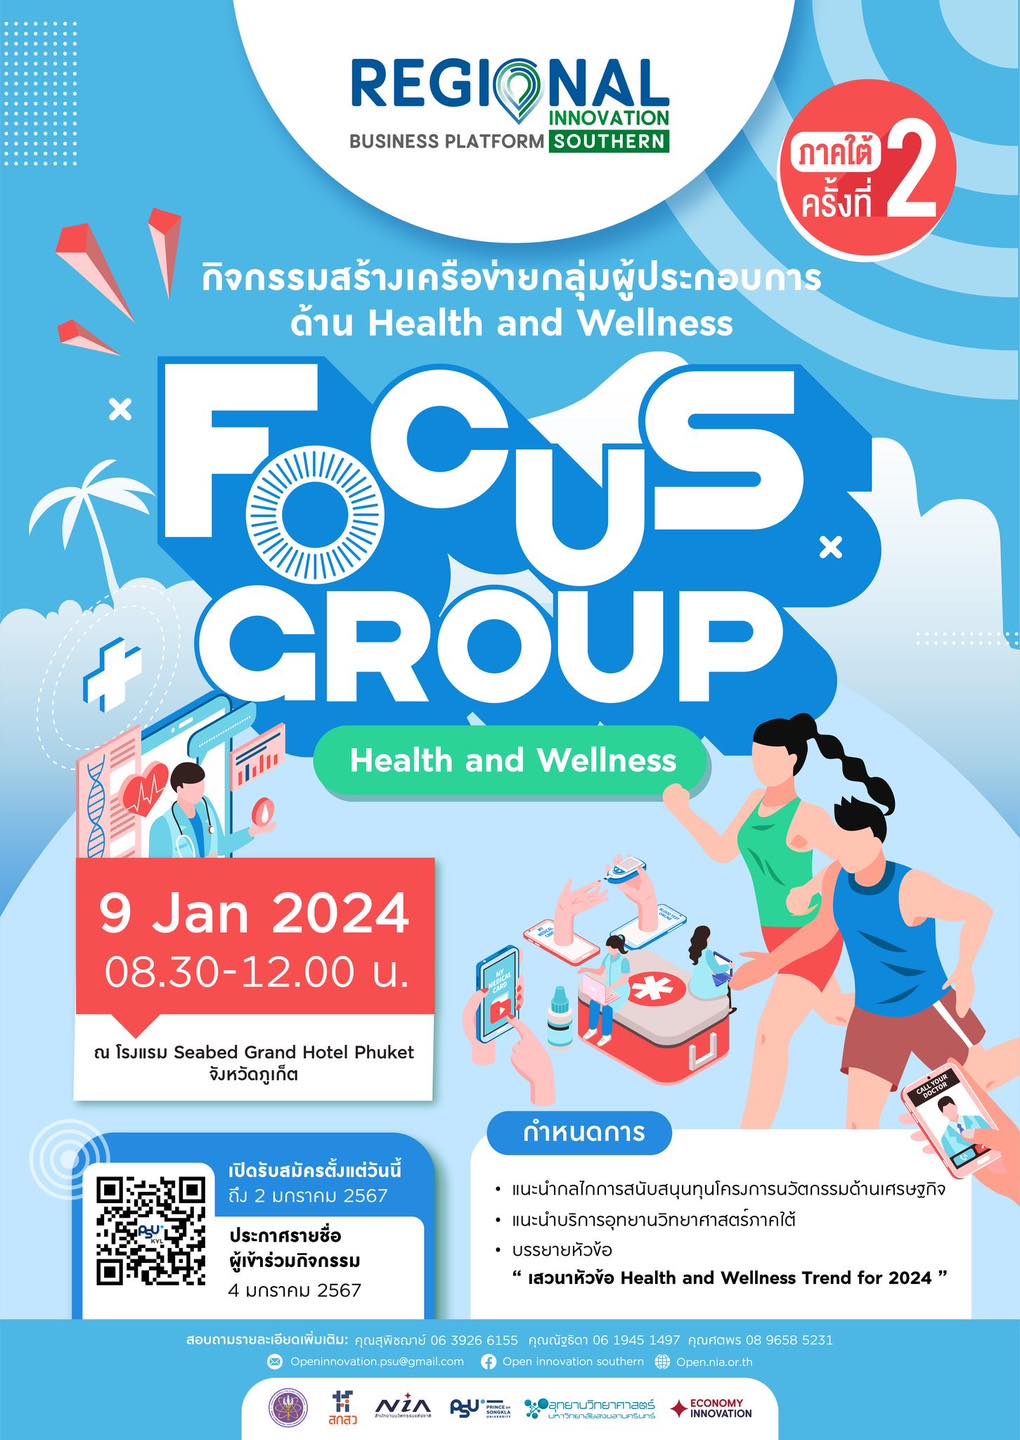 กิจกรรม "Focus Group" ครั้งที่ 2 ในธีม Health and Wellness